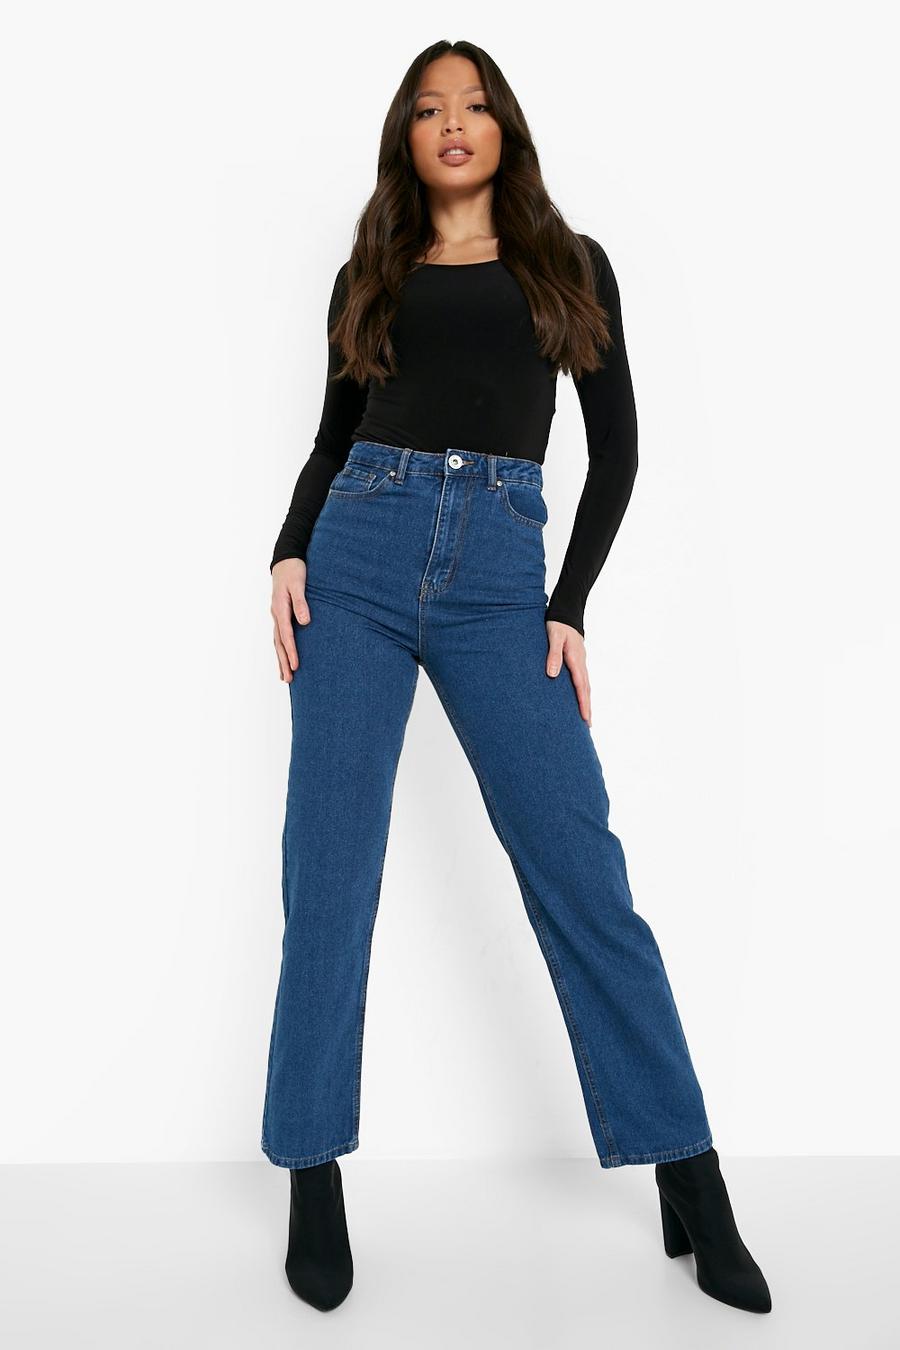 כחול ביניים azul ג'ינס גזרת בויפרנד לנשים גבוהות